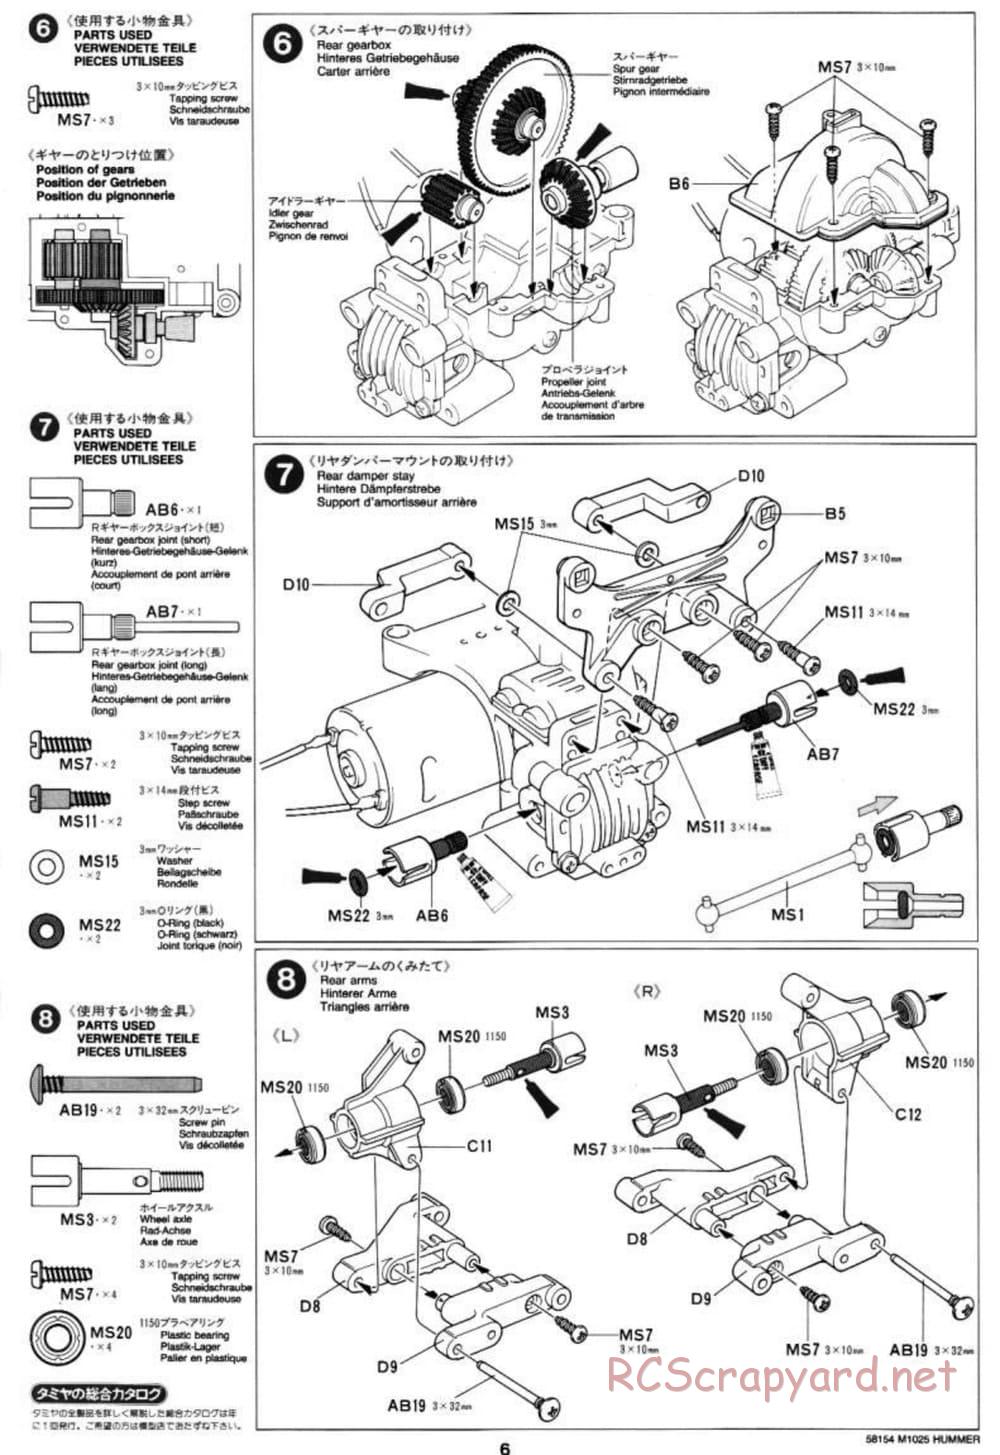 Tamiya - M1025 Hummer - TA-01 Chassis - Manual - Page 6